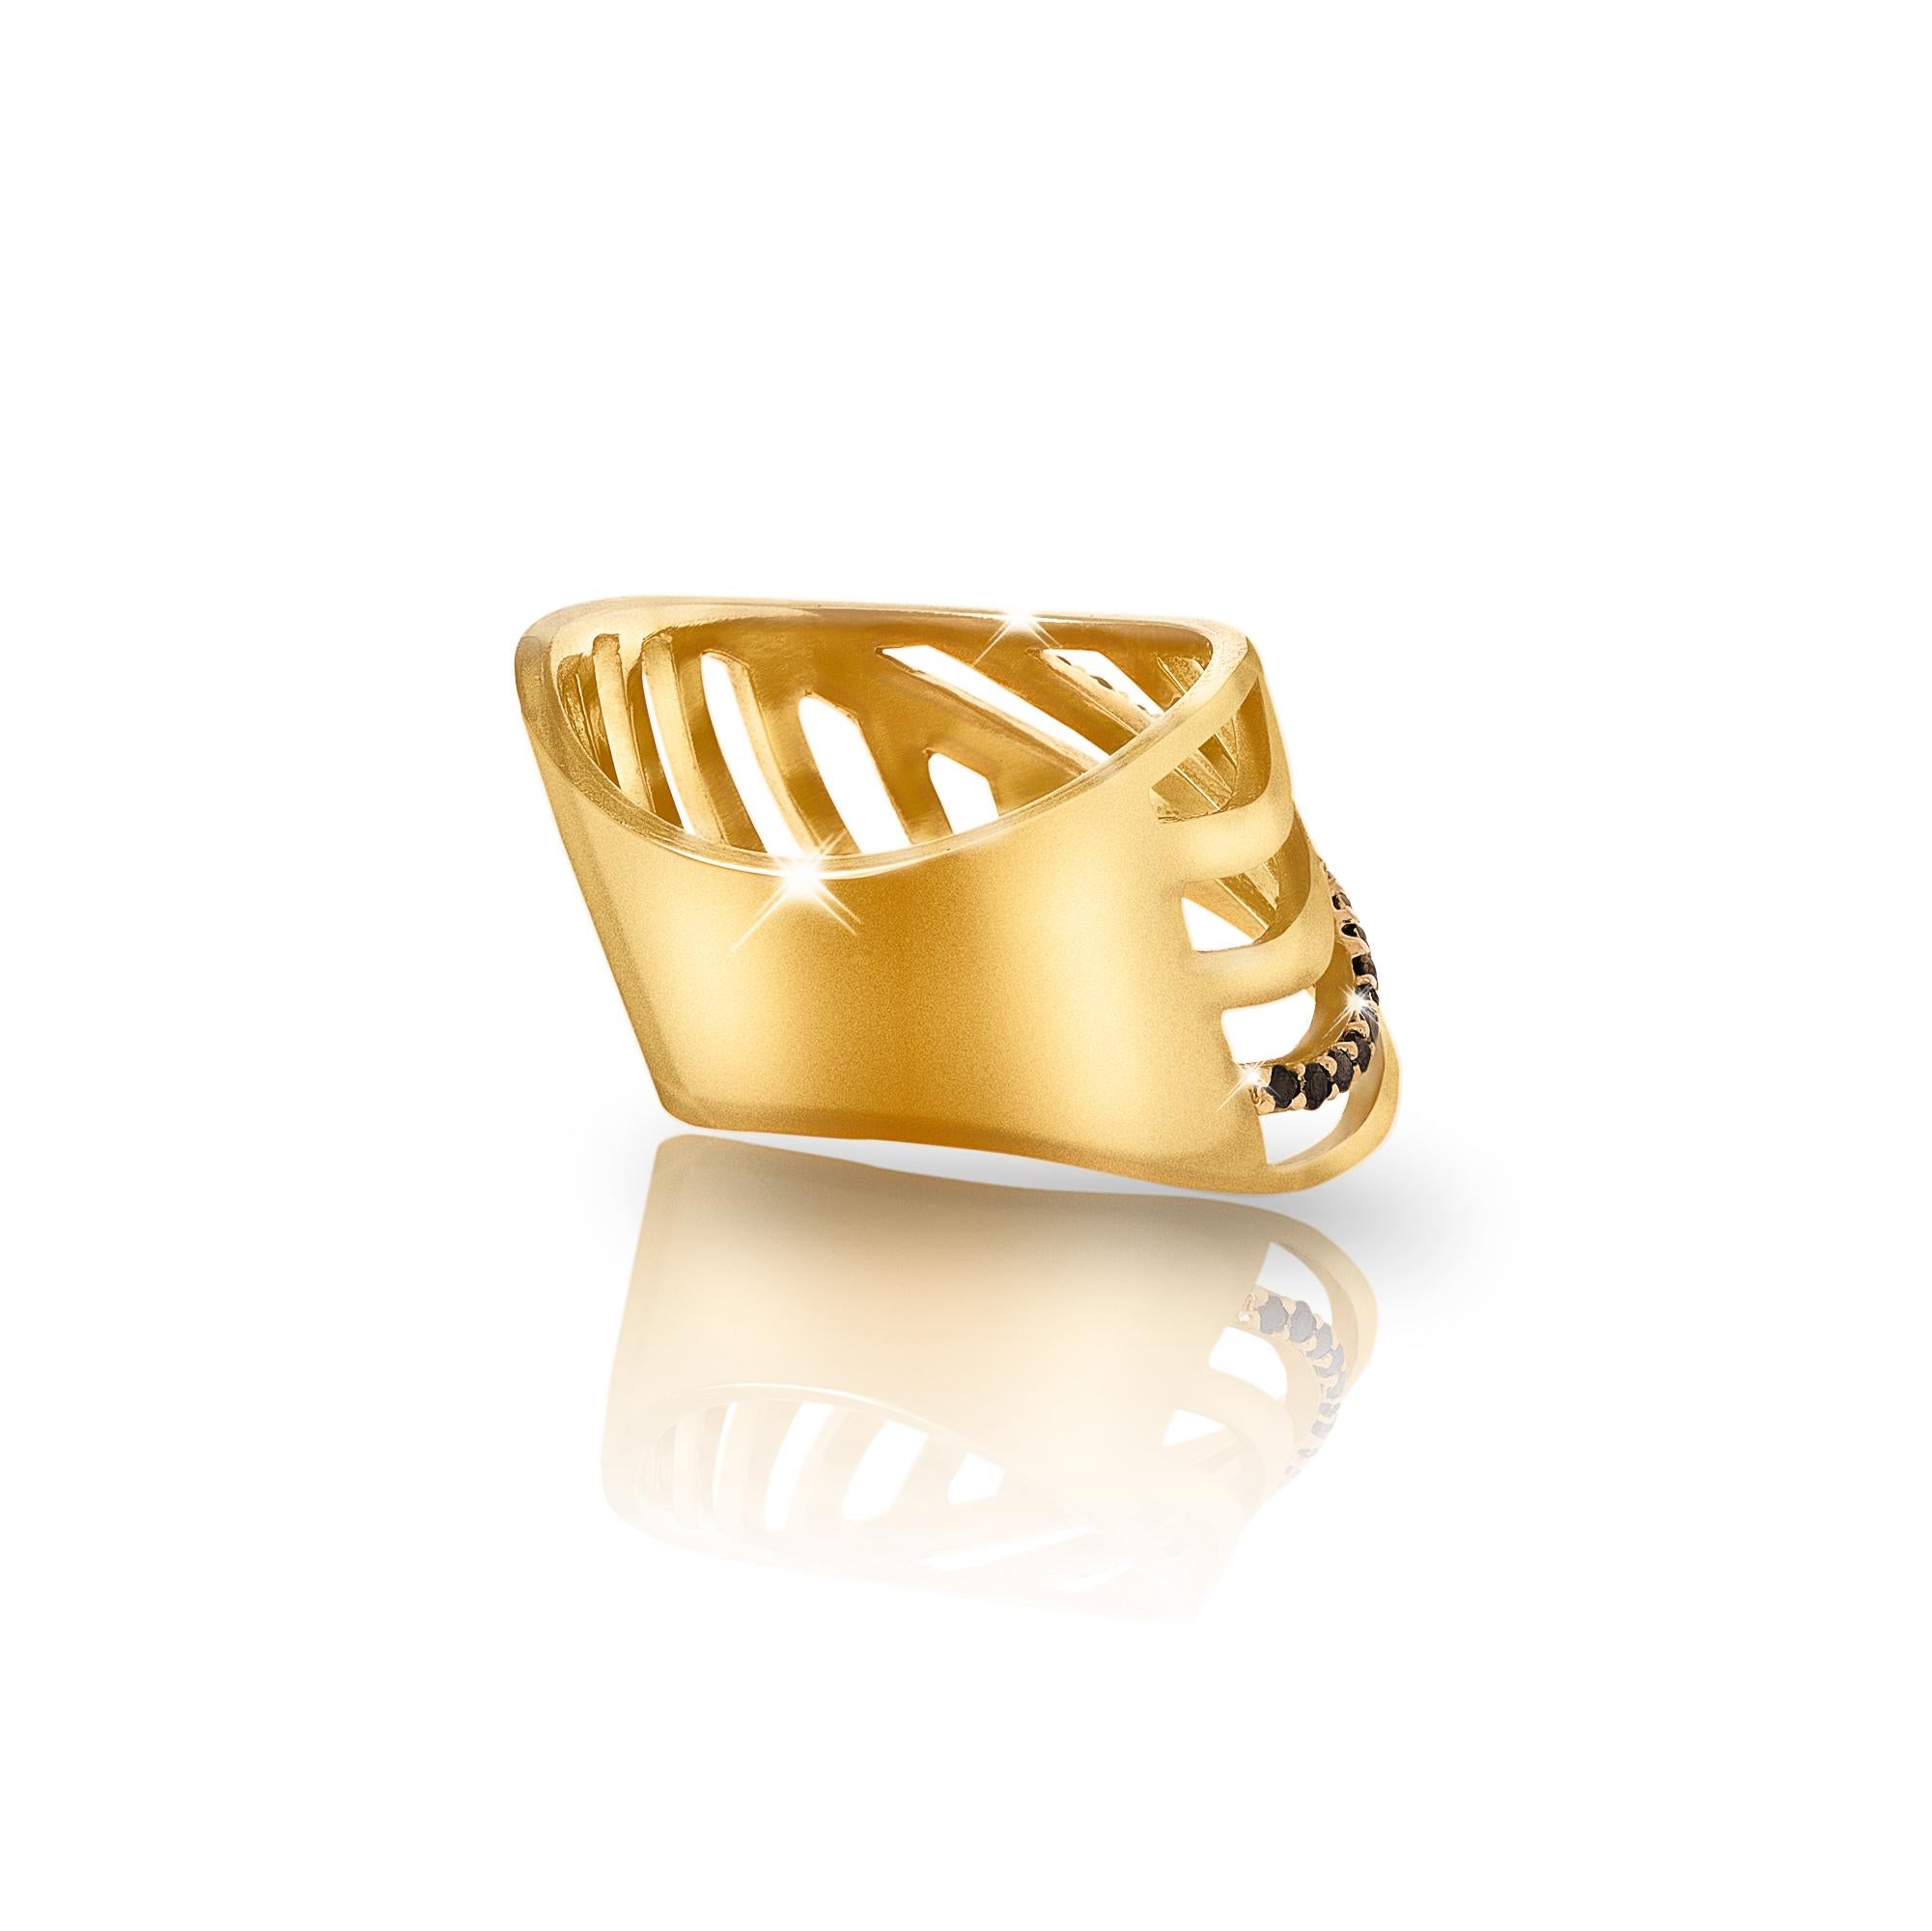 Unisex-Ring aus 18k Gelbgold Vermeil, mit schwarzen Diamanten besetzt. Er kann sowohl einzeln als auch in Kombination mit mehreren Ringen der Collection'S getragen werden. Dieses einzigartige Stück hat Aussparungen in einem abstrakten